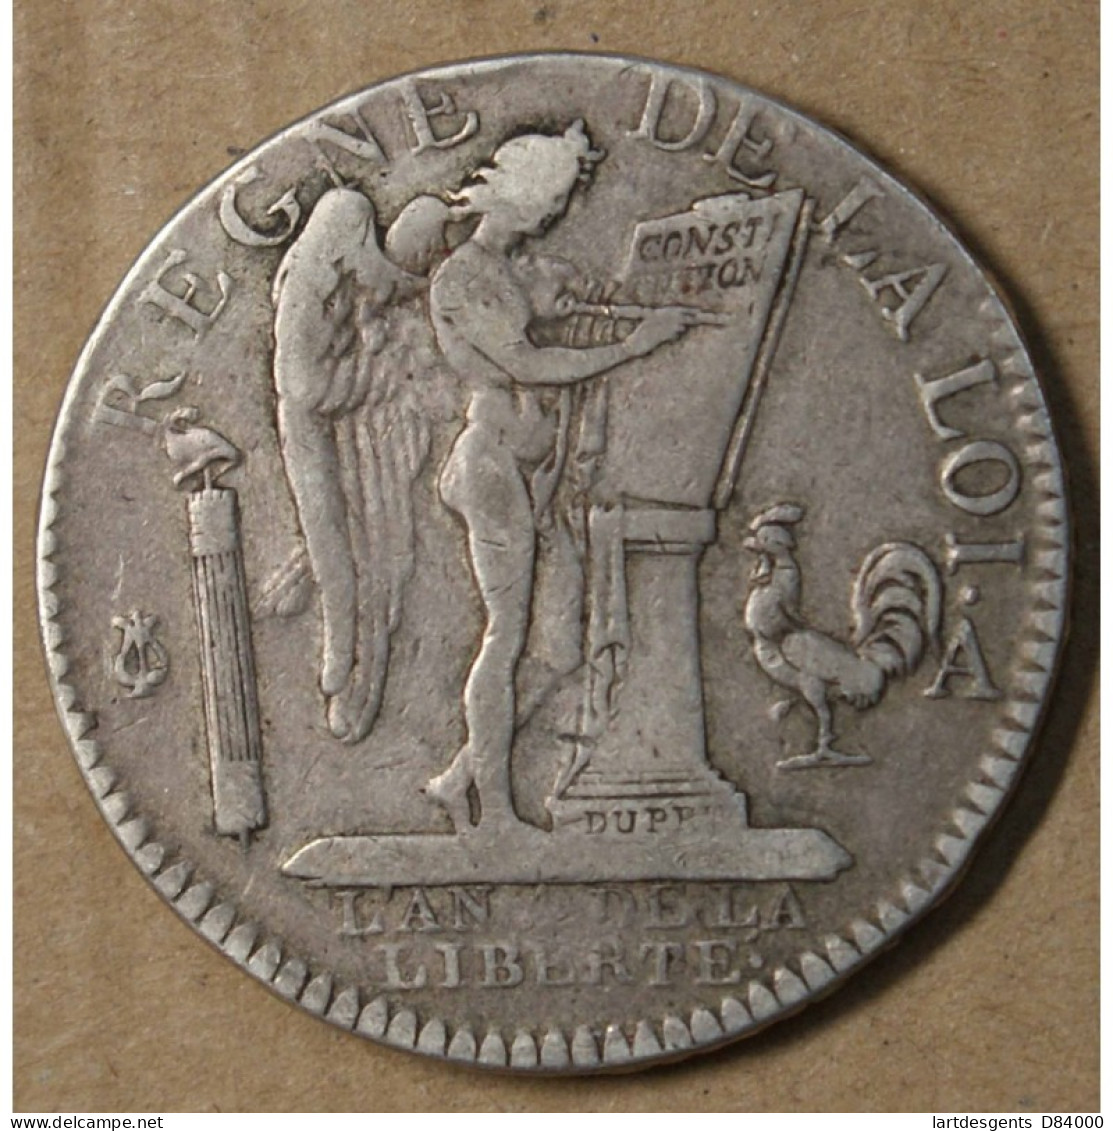 CONSTITUTION - Louis XVI 1/2 ECU AU GENIE 1792 A TTB, Lartdesgents.fr - Unused Stamps